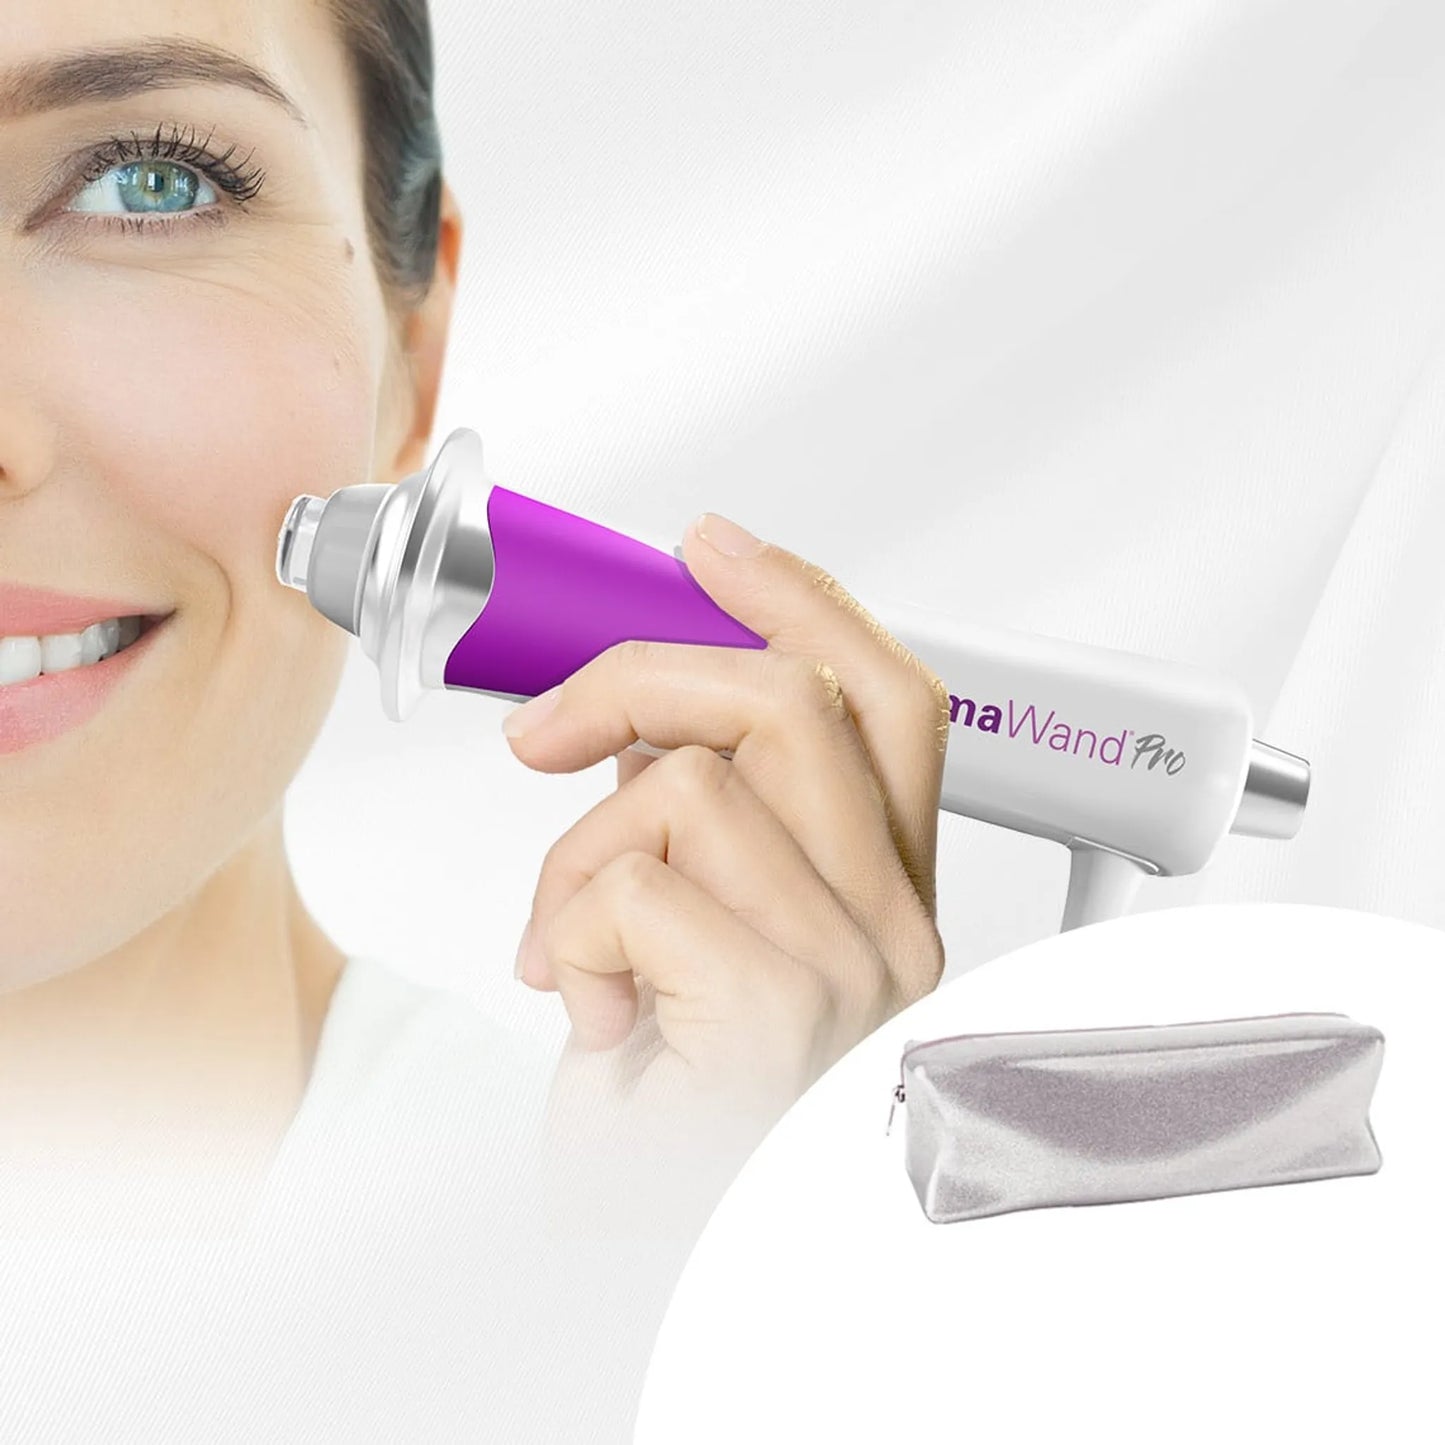 DermaWand Pro – Anti Aging Tool mit revitalisierender Wirkung – Beauty Gadget für effektives Augenbrauen-Lifting – Radiofrequenz Gerät Gesicht inkl. Tasche